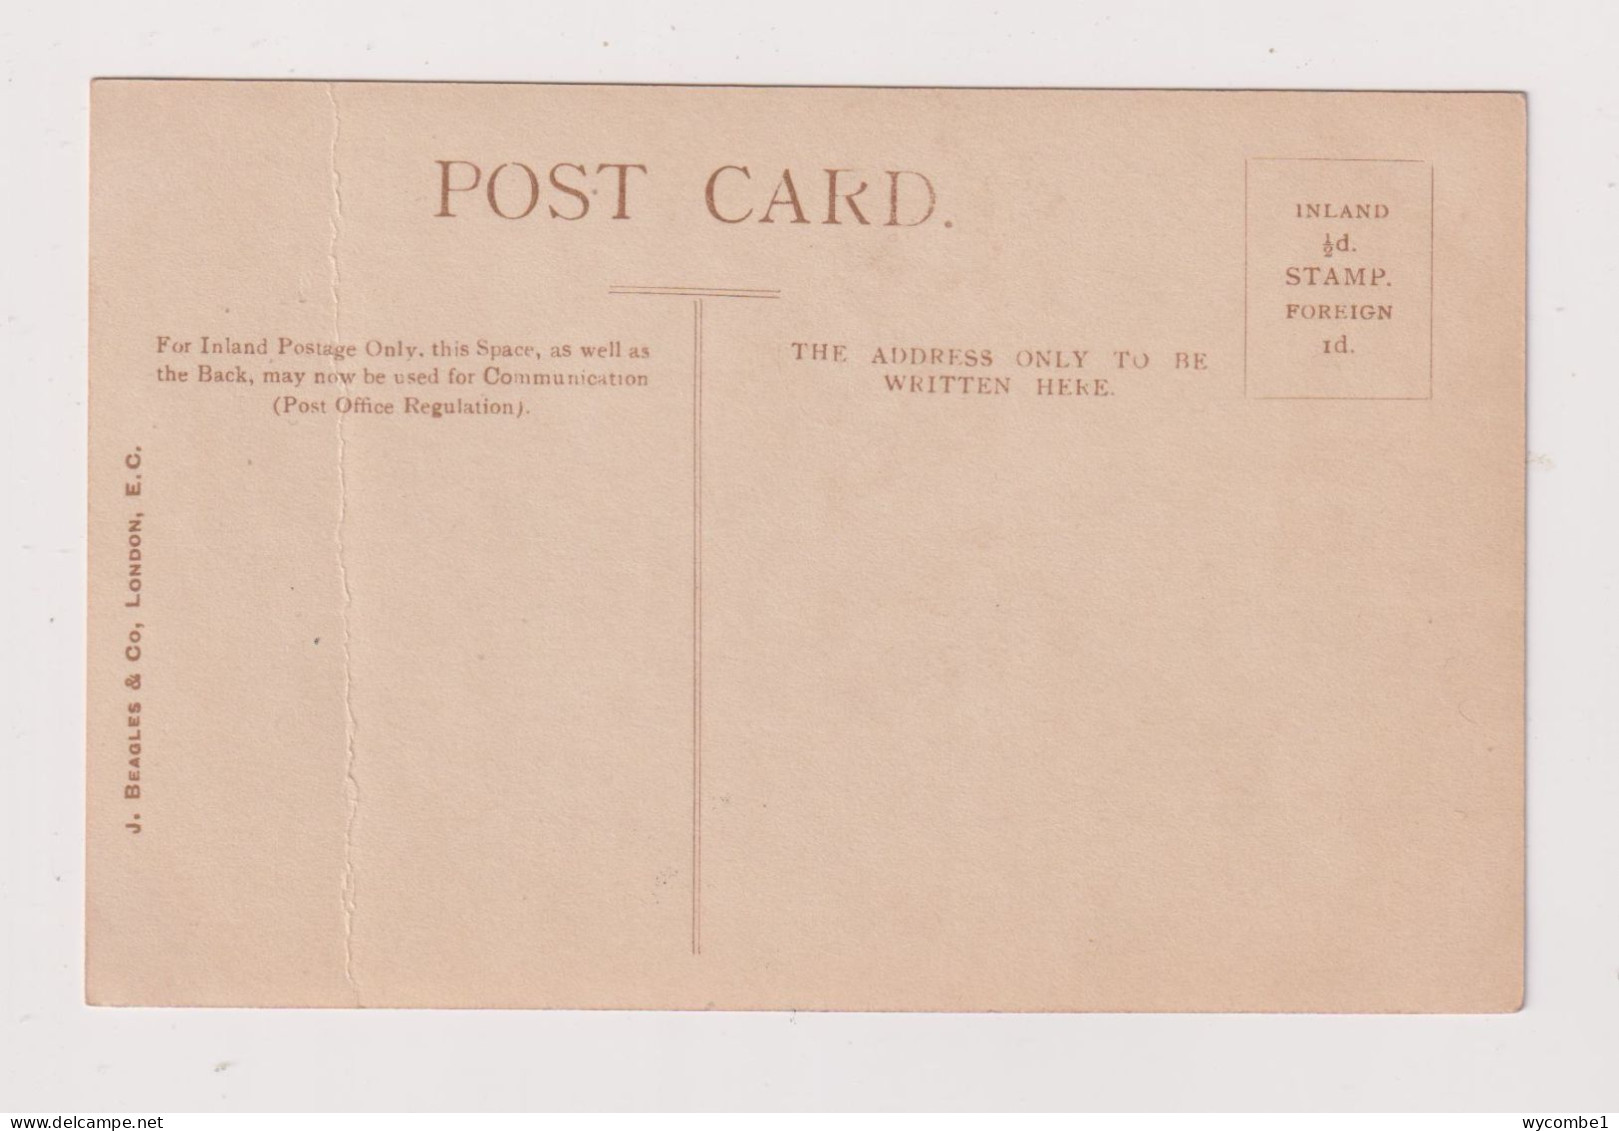 ENGLAND - Marie Studholme Unused Vintage Postcard - Artistes